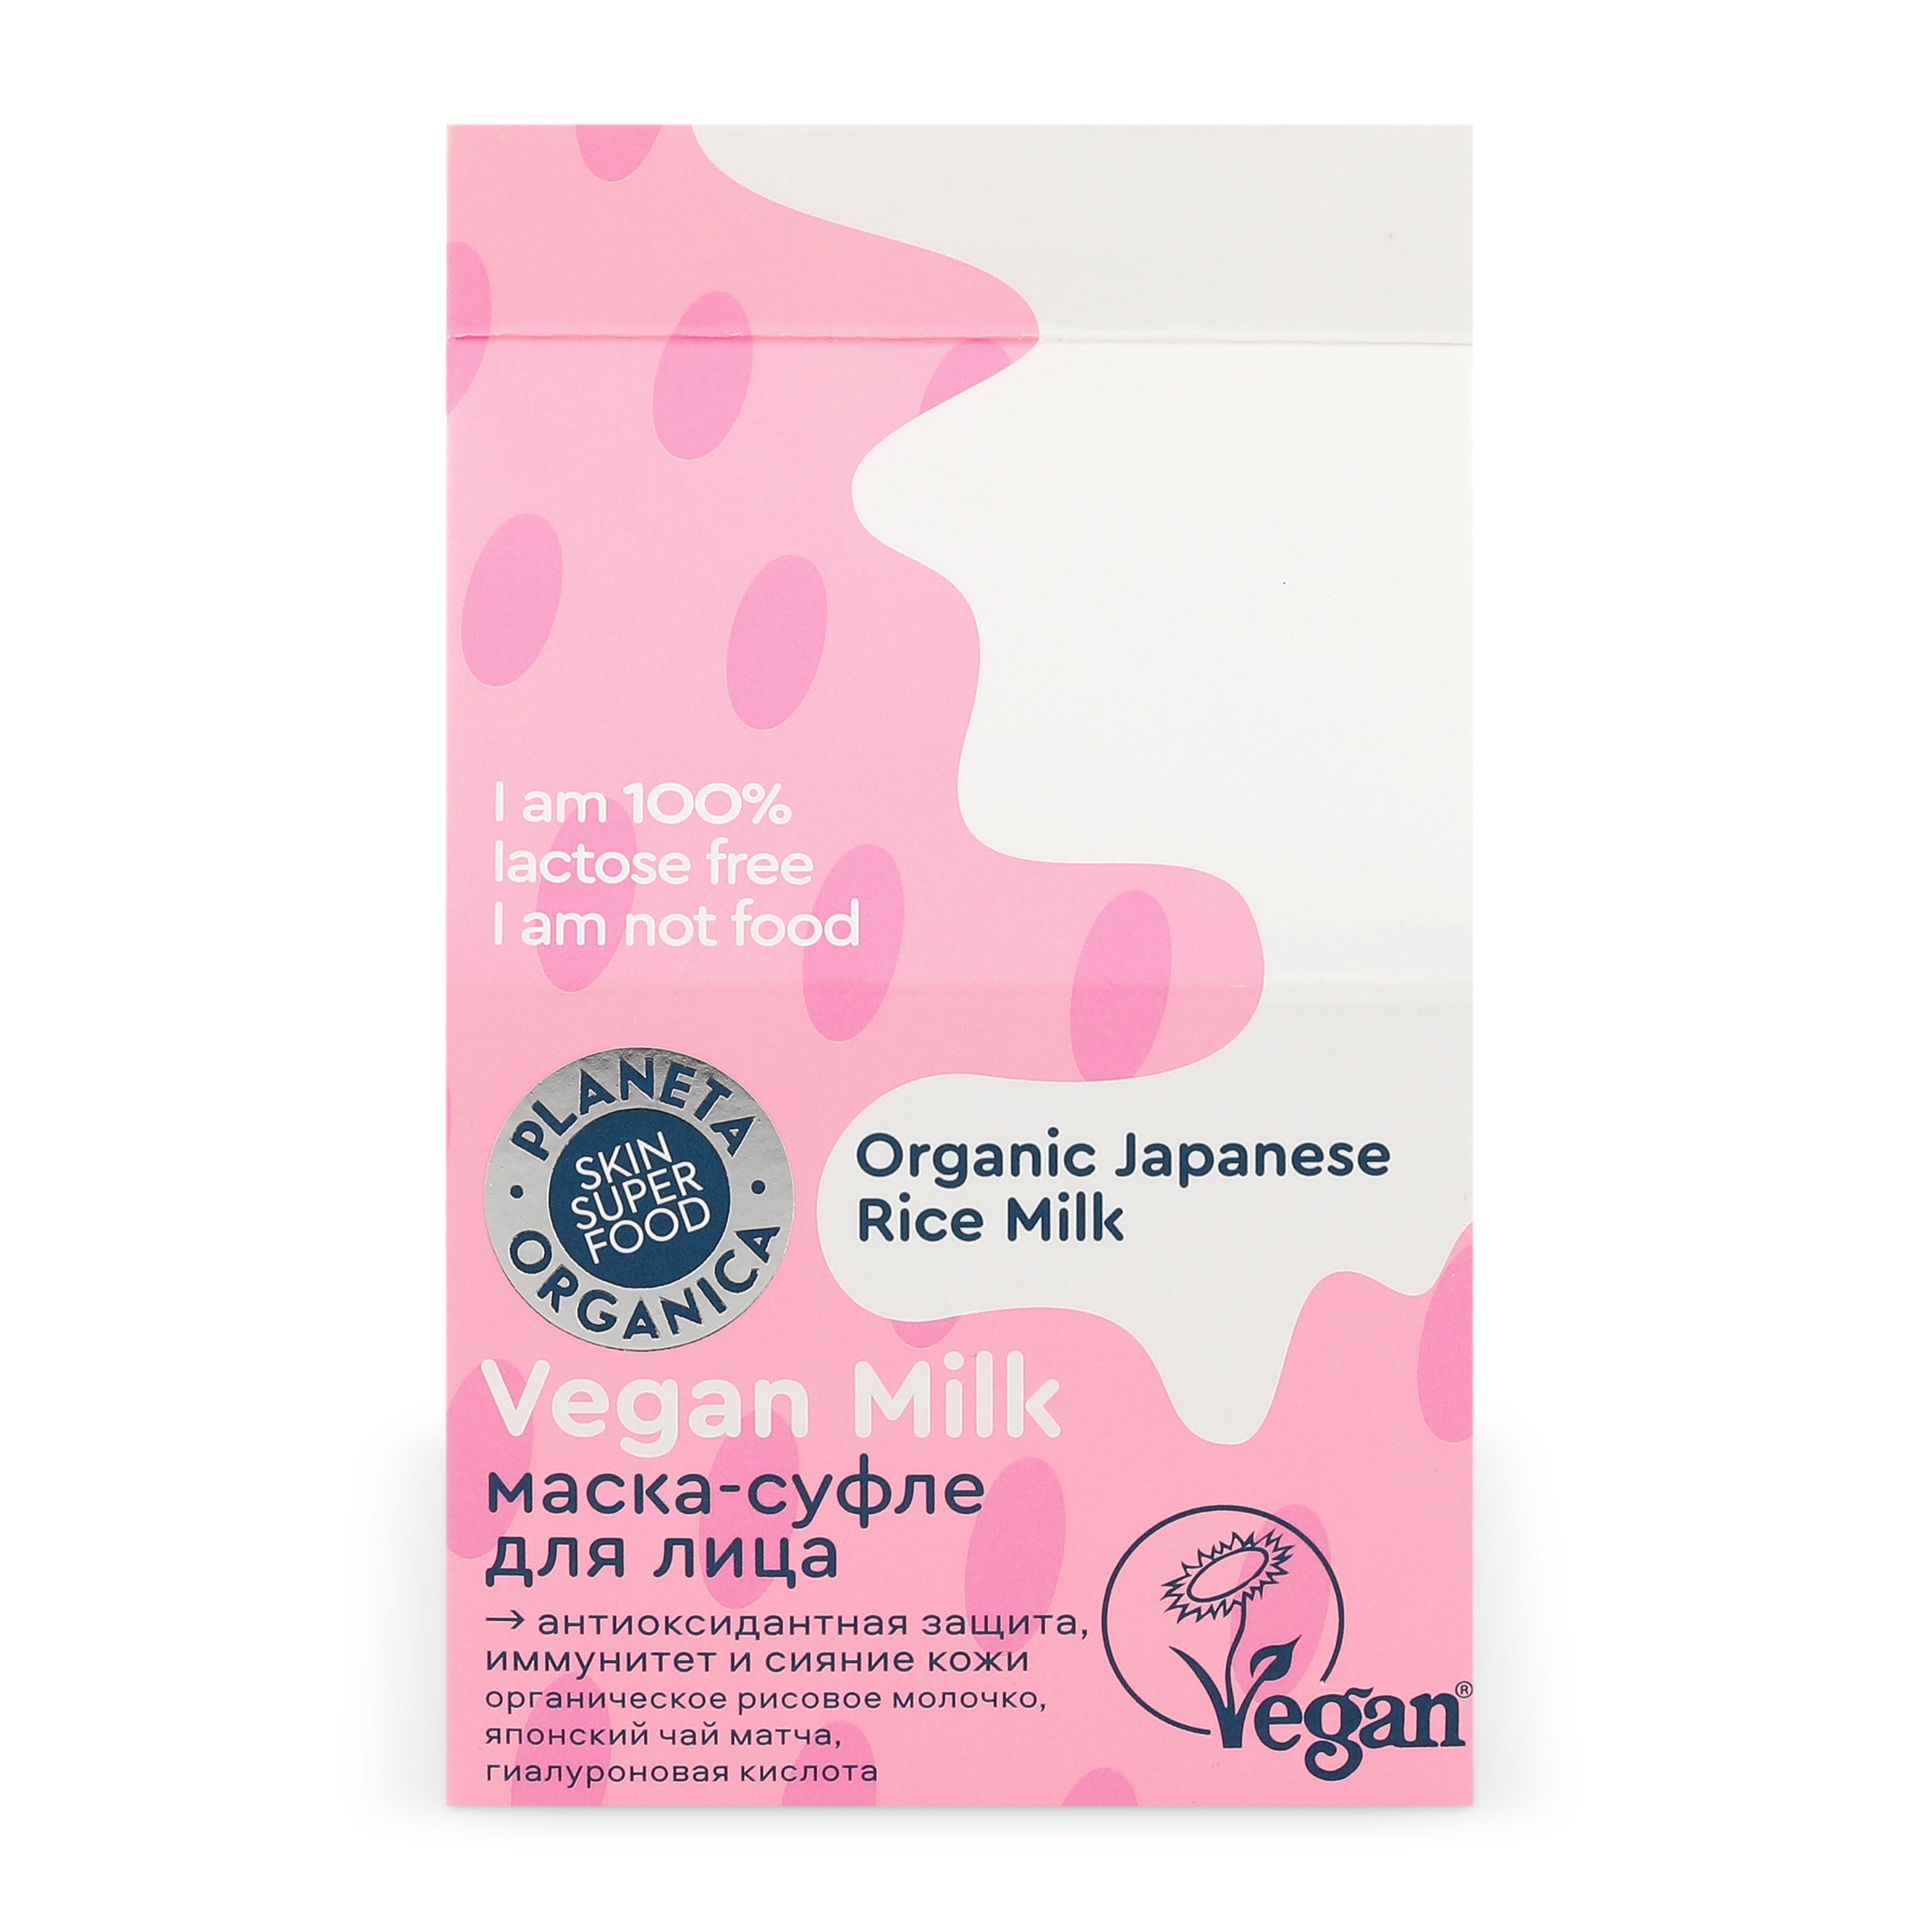 Маска-суфле для лица Planeta Organica Vegan milk, защита, сияние и иммунитет кожи, 70 мл unicorns approve воздушные суфле патчи для лица вишневый йогурт